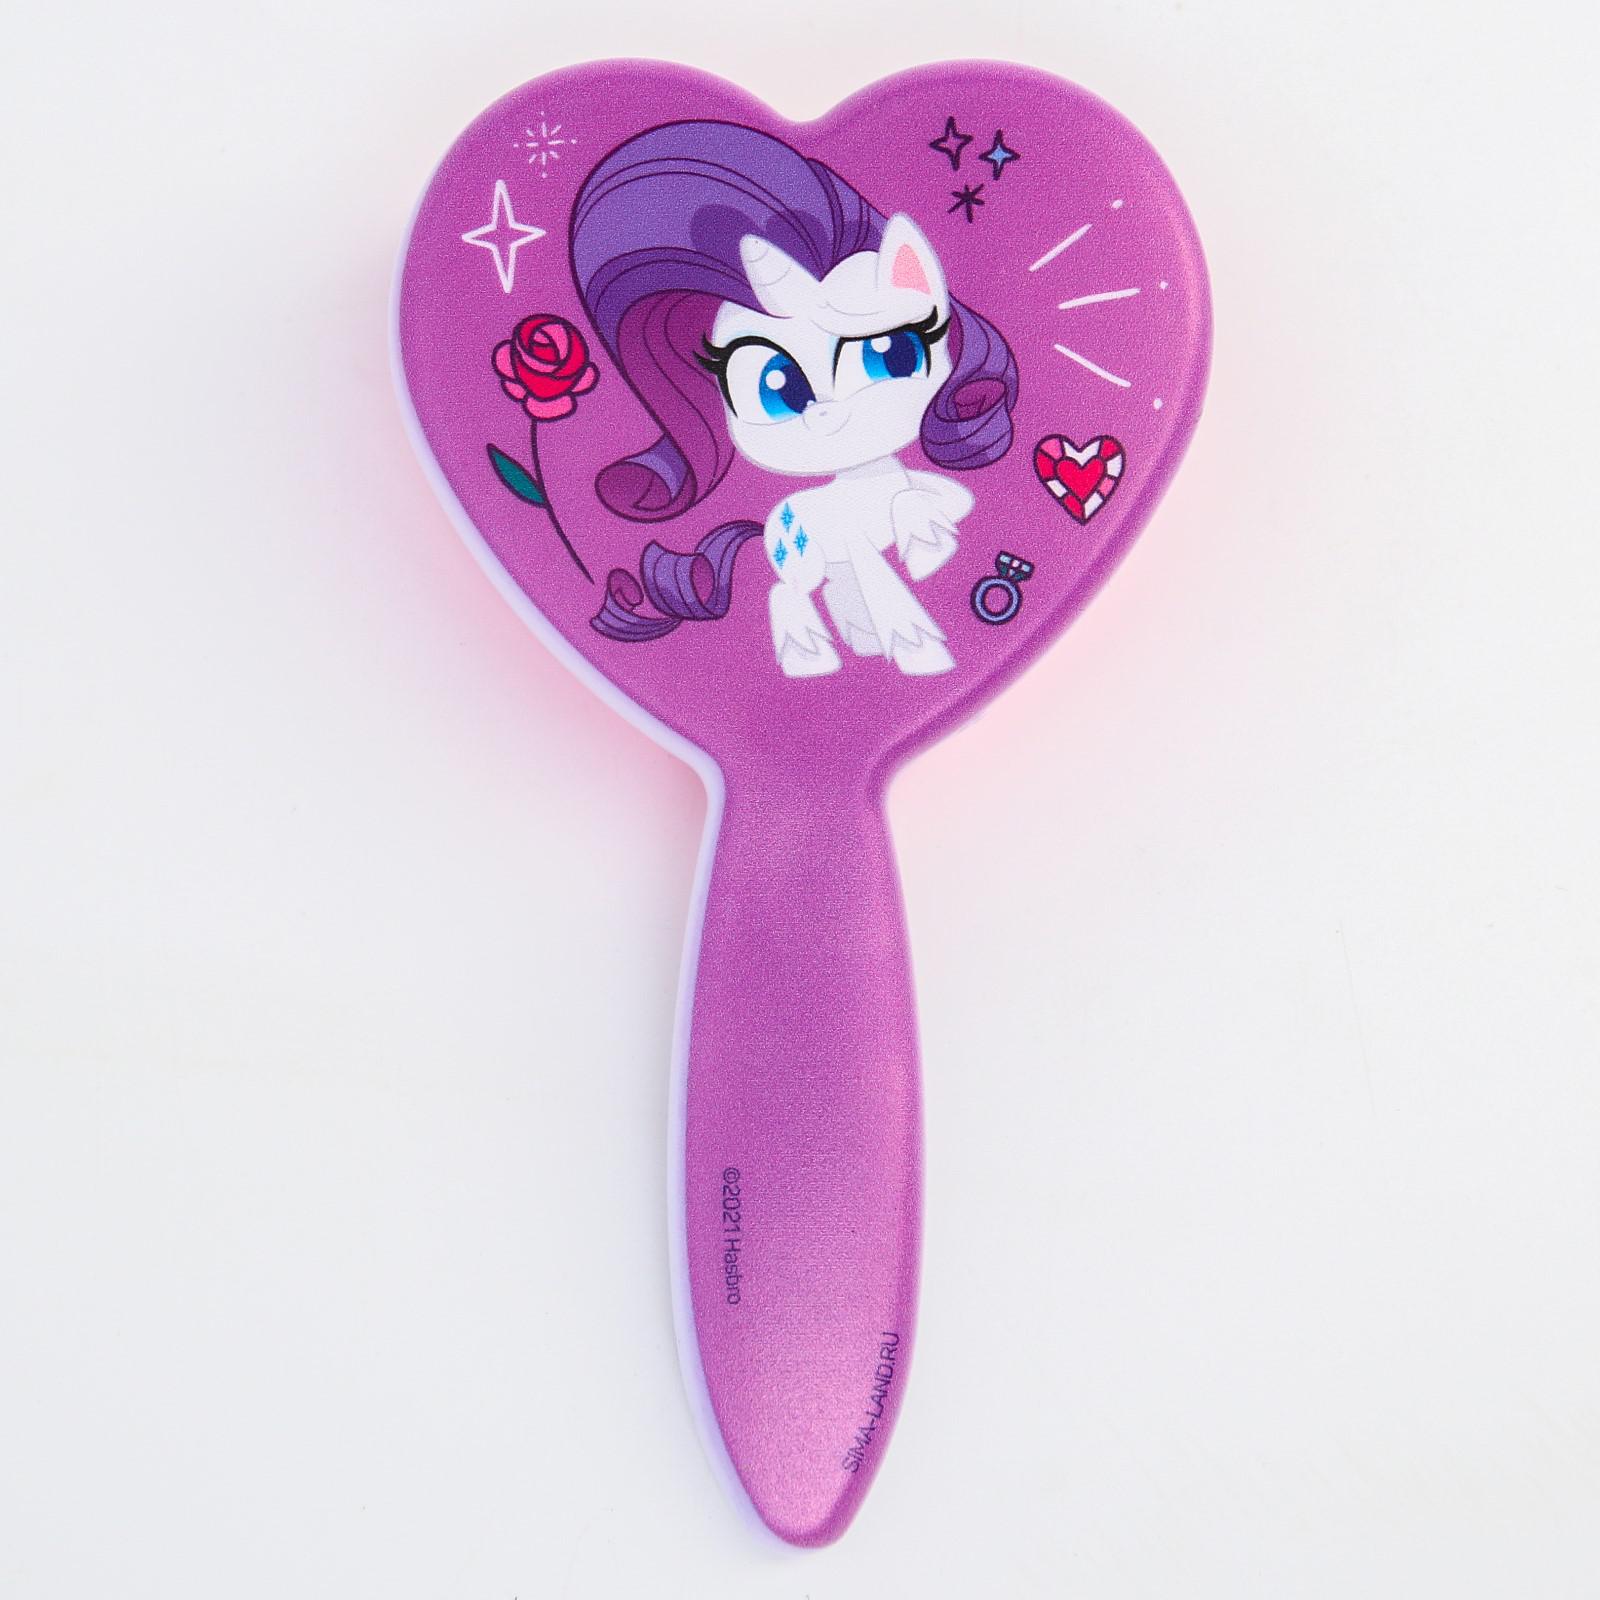 Расческа Hasbro массажная в форме сердца «Рарити» My Little Pony - фото 2